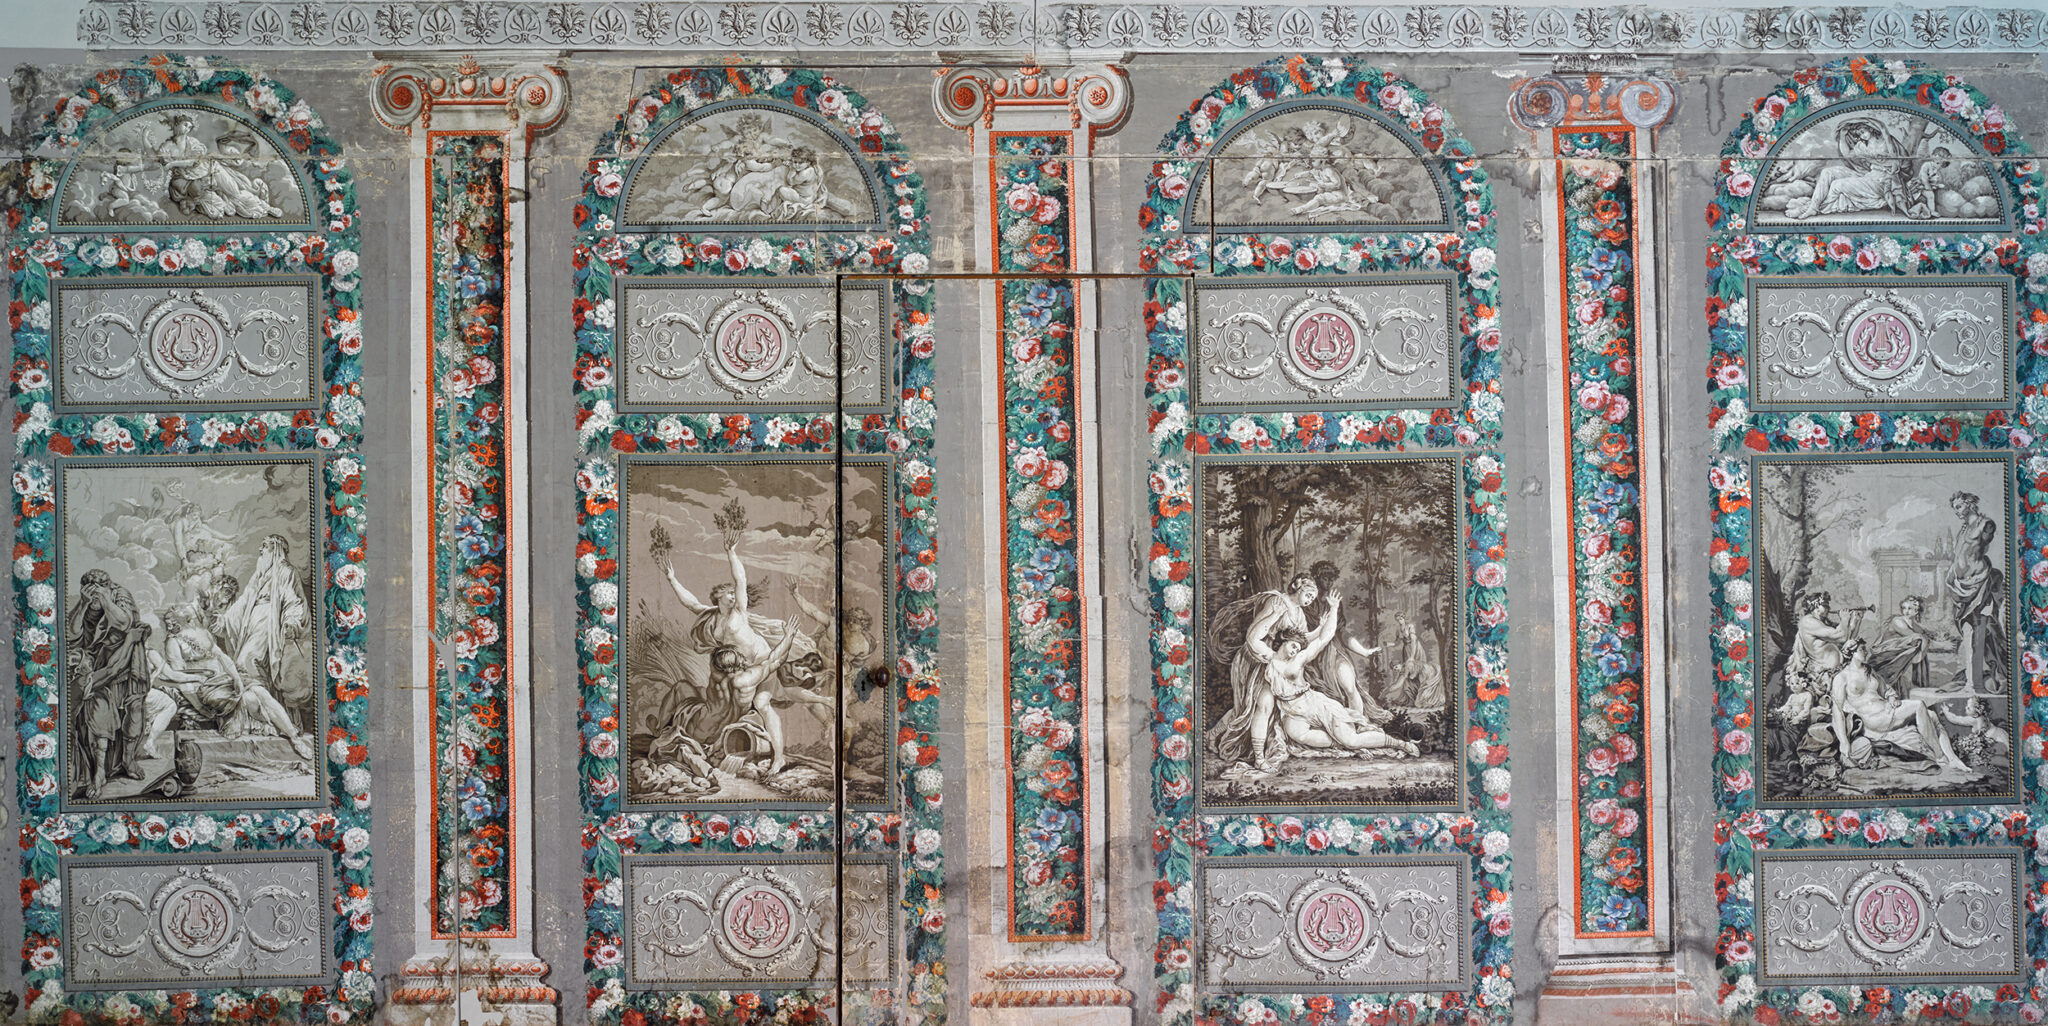 Papel pintado representado las Metamorfosis de Ovidio